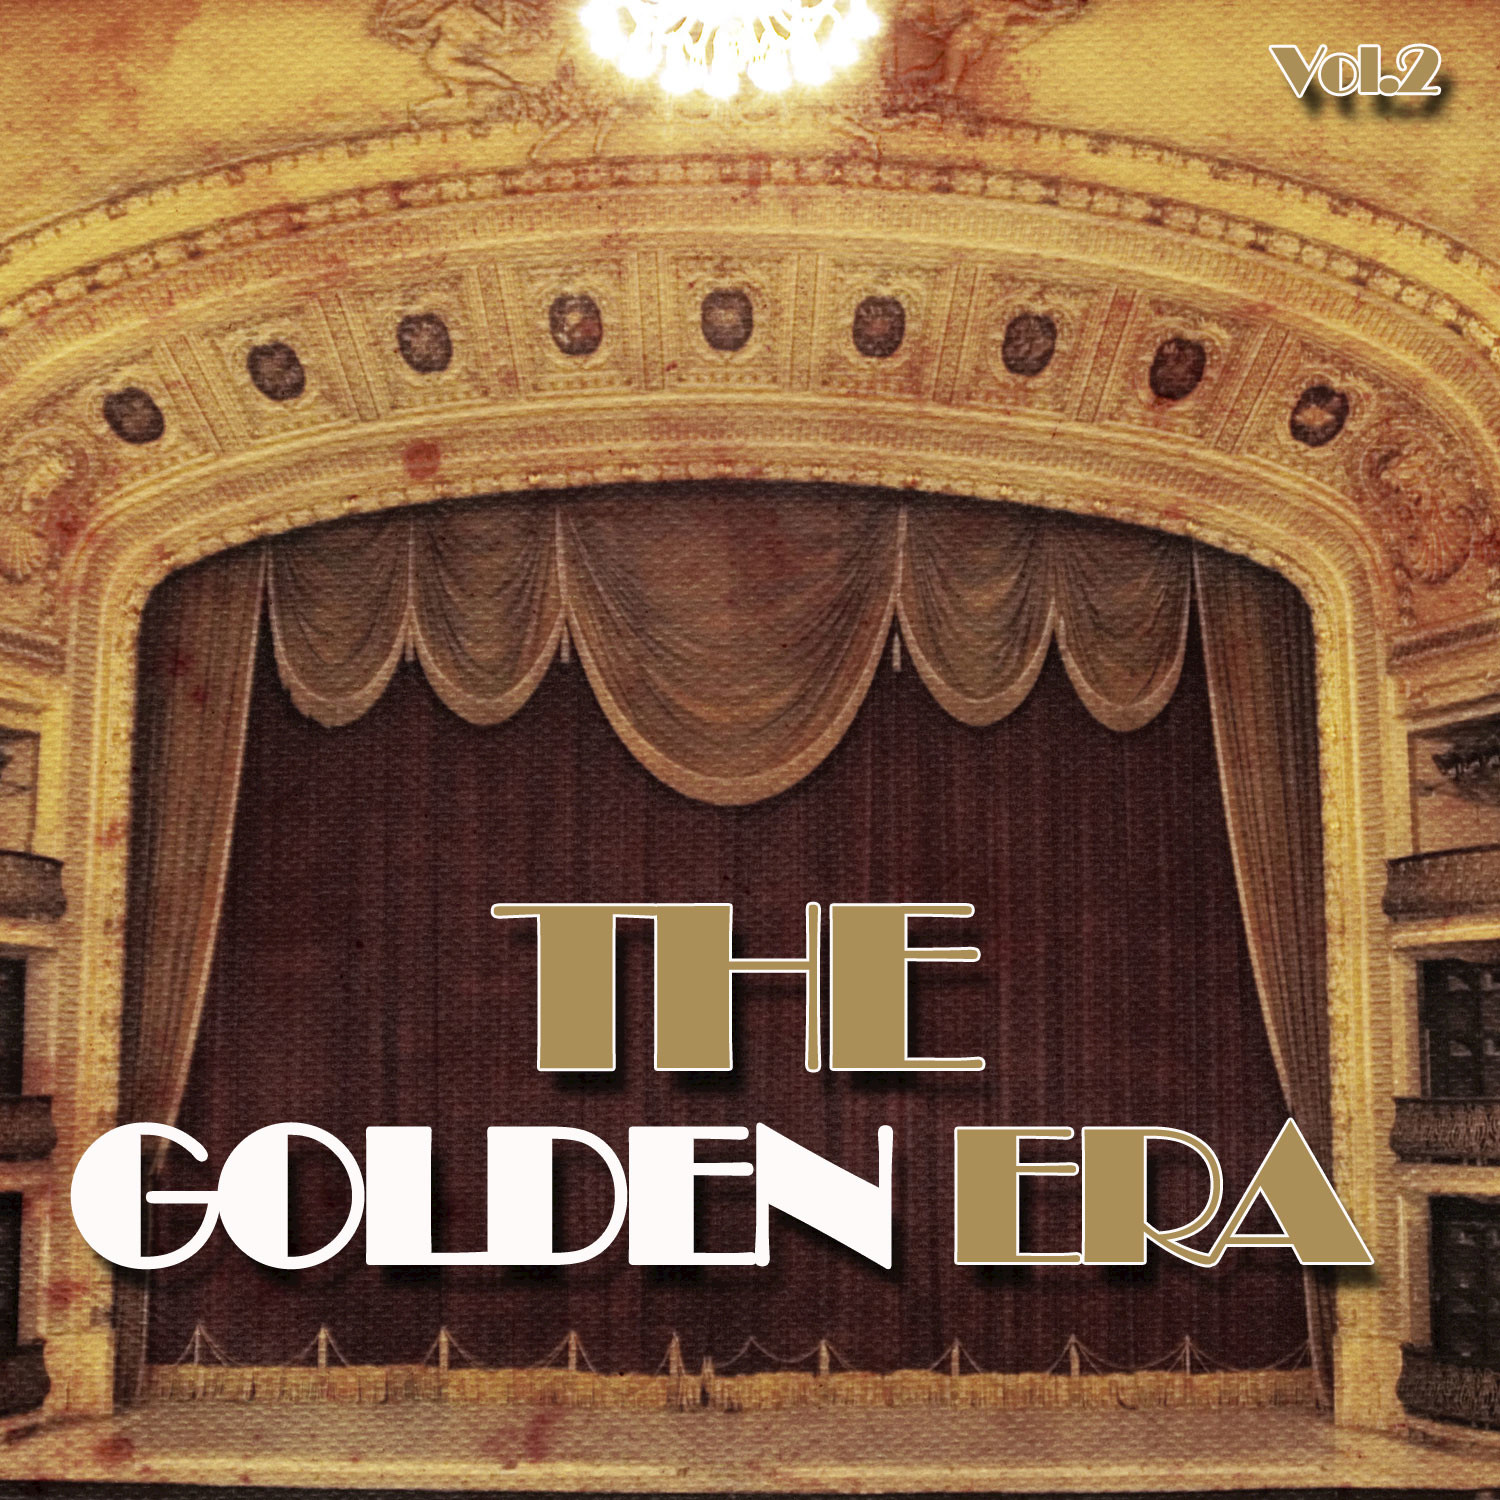 The Golden Era, Vol. 2